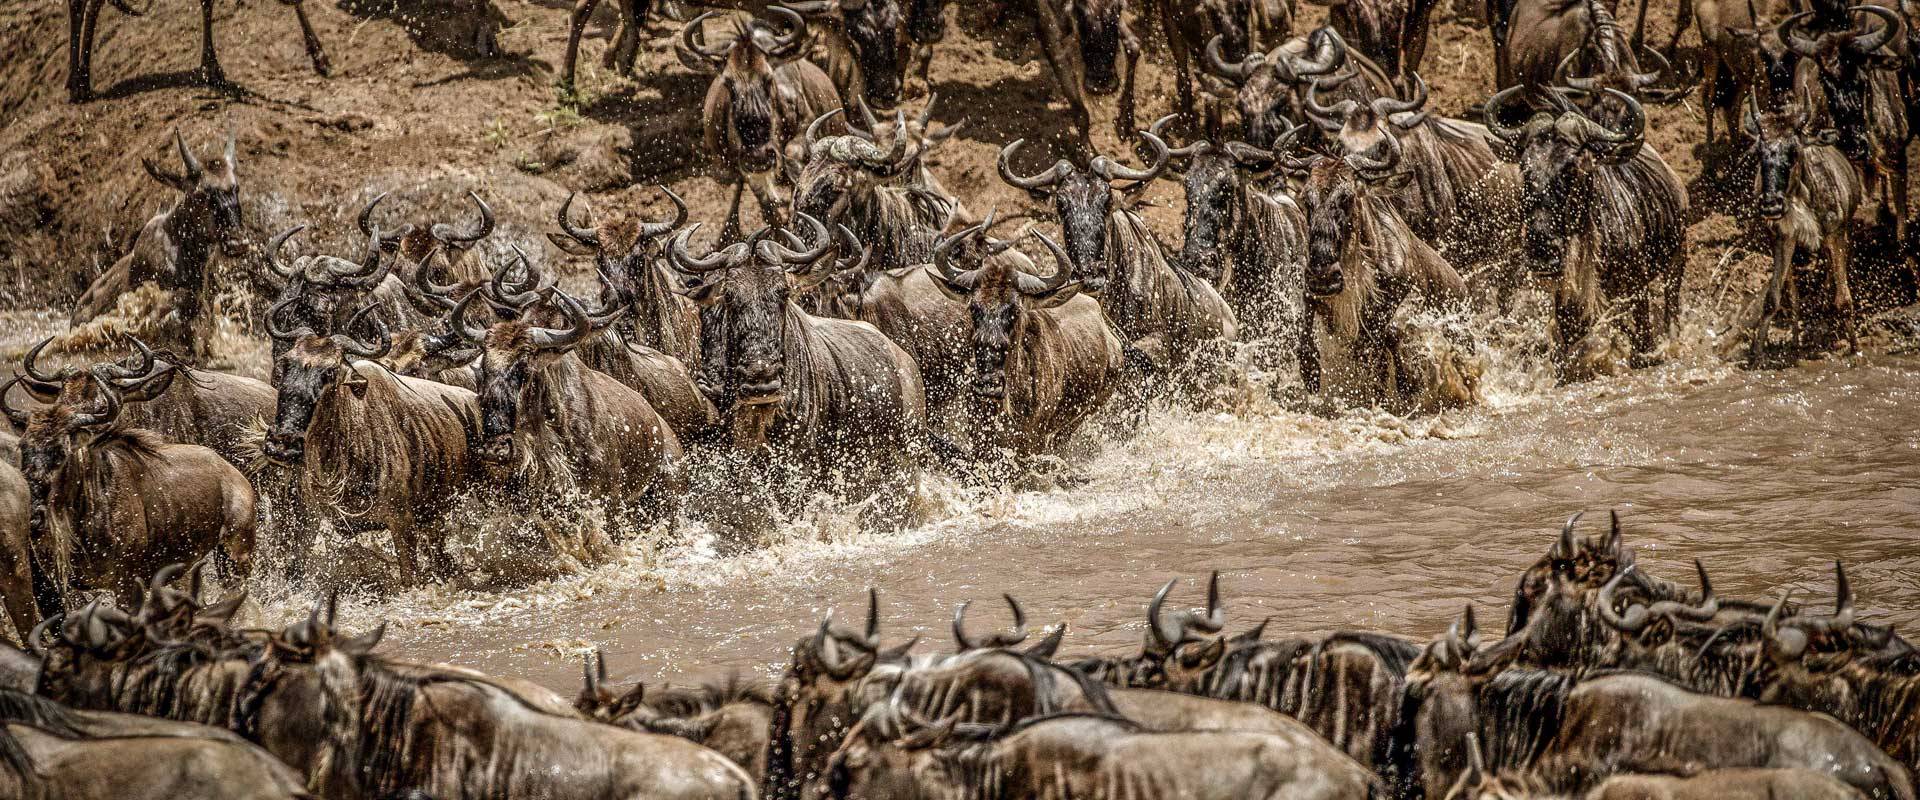 Kenya Safari Lodges Masai Mara